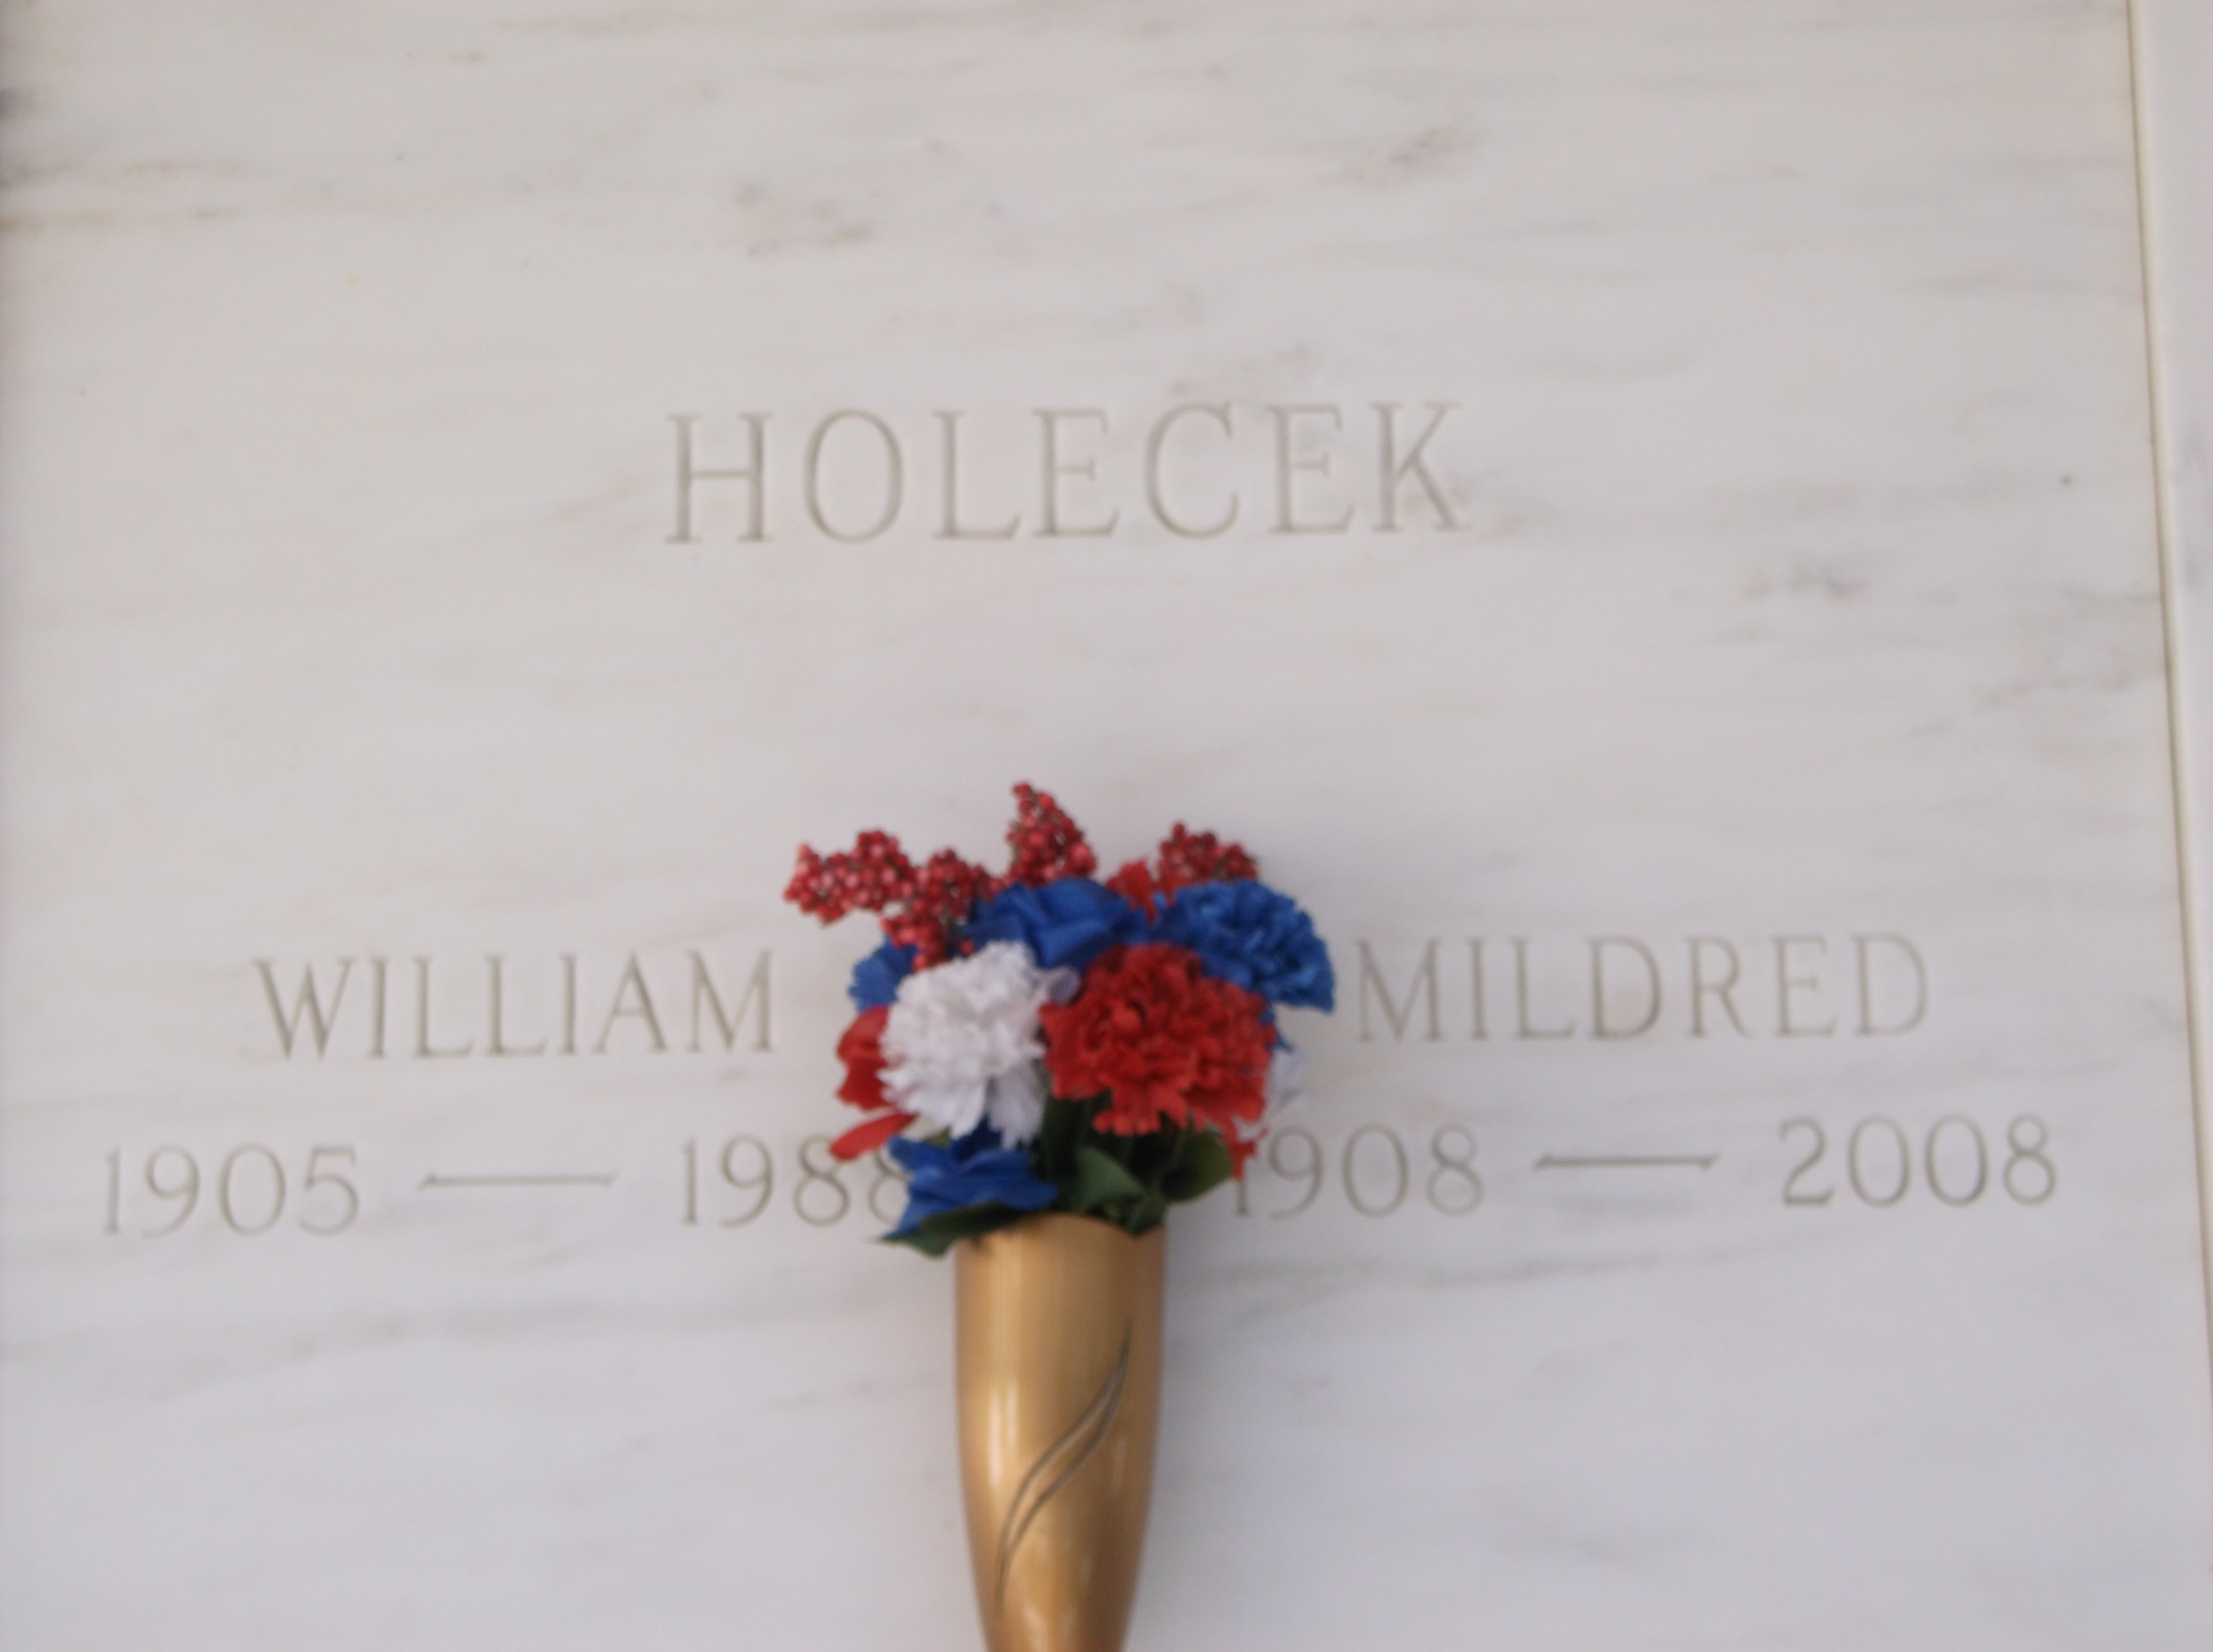 William Holecek